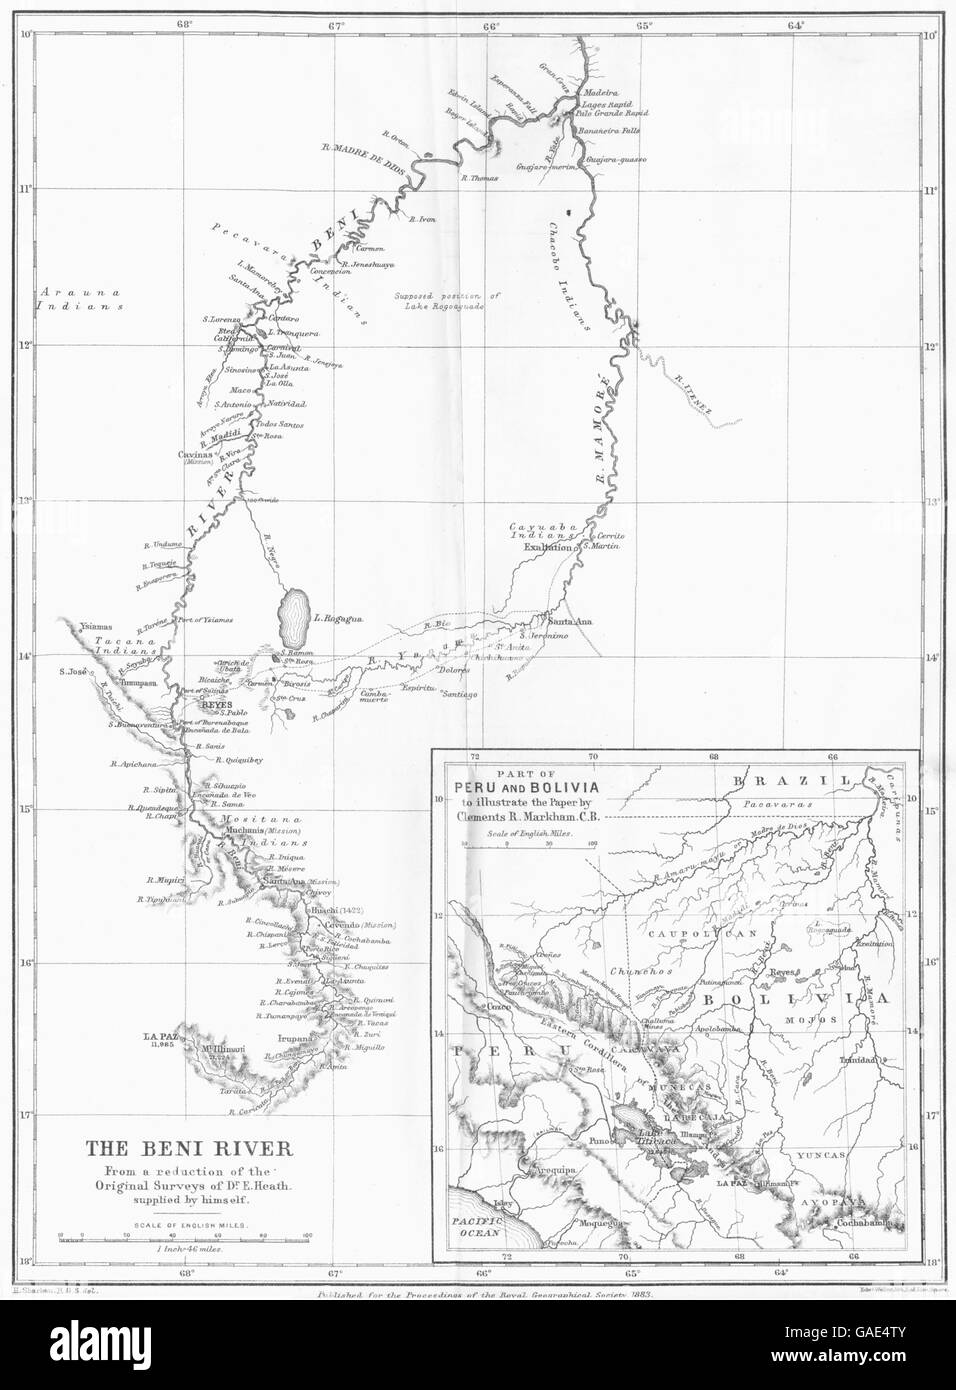 Perù: i beni fiume; Finestra mappa di parte del Perù e Bolivia. Mappa RGS, 1883 Foto Stock